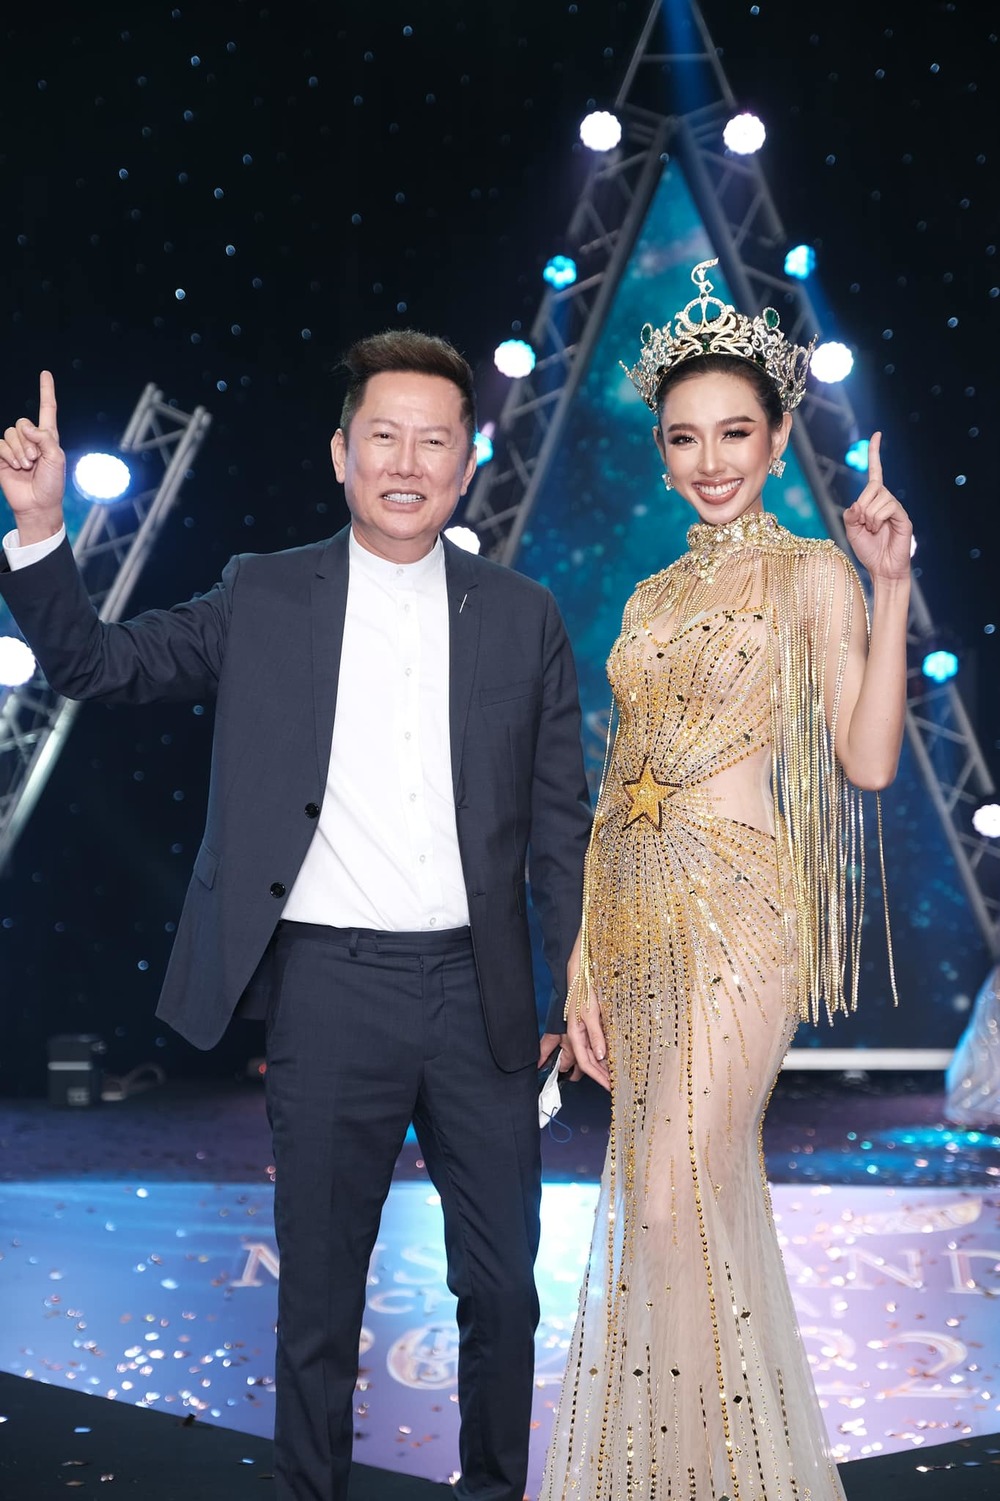  
Thùy Tiên hiện ở Thái và góp mặt trong các sự kiện, hoạt động trên cương vị Miss Grand International 2021. (Ảnh: FB Nguyễn Thúc Thùy Tiên)